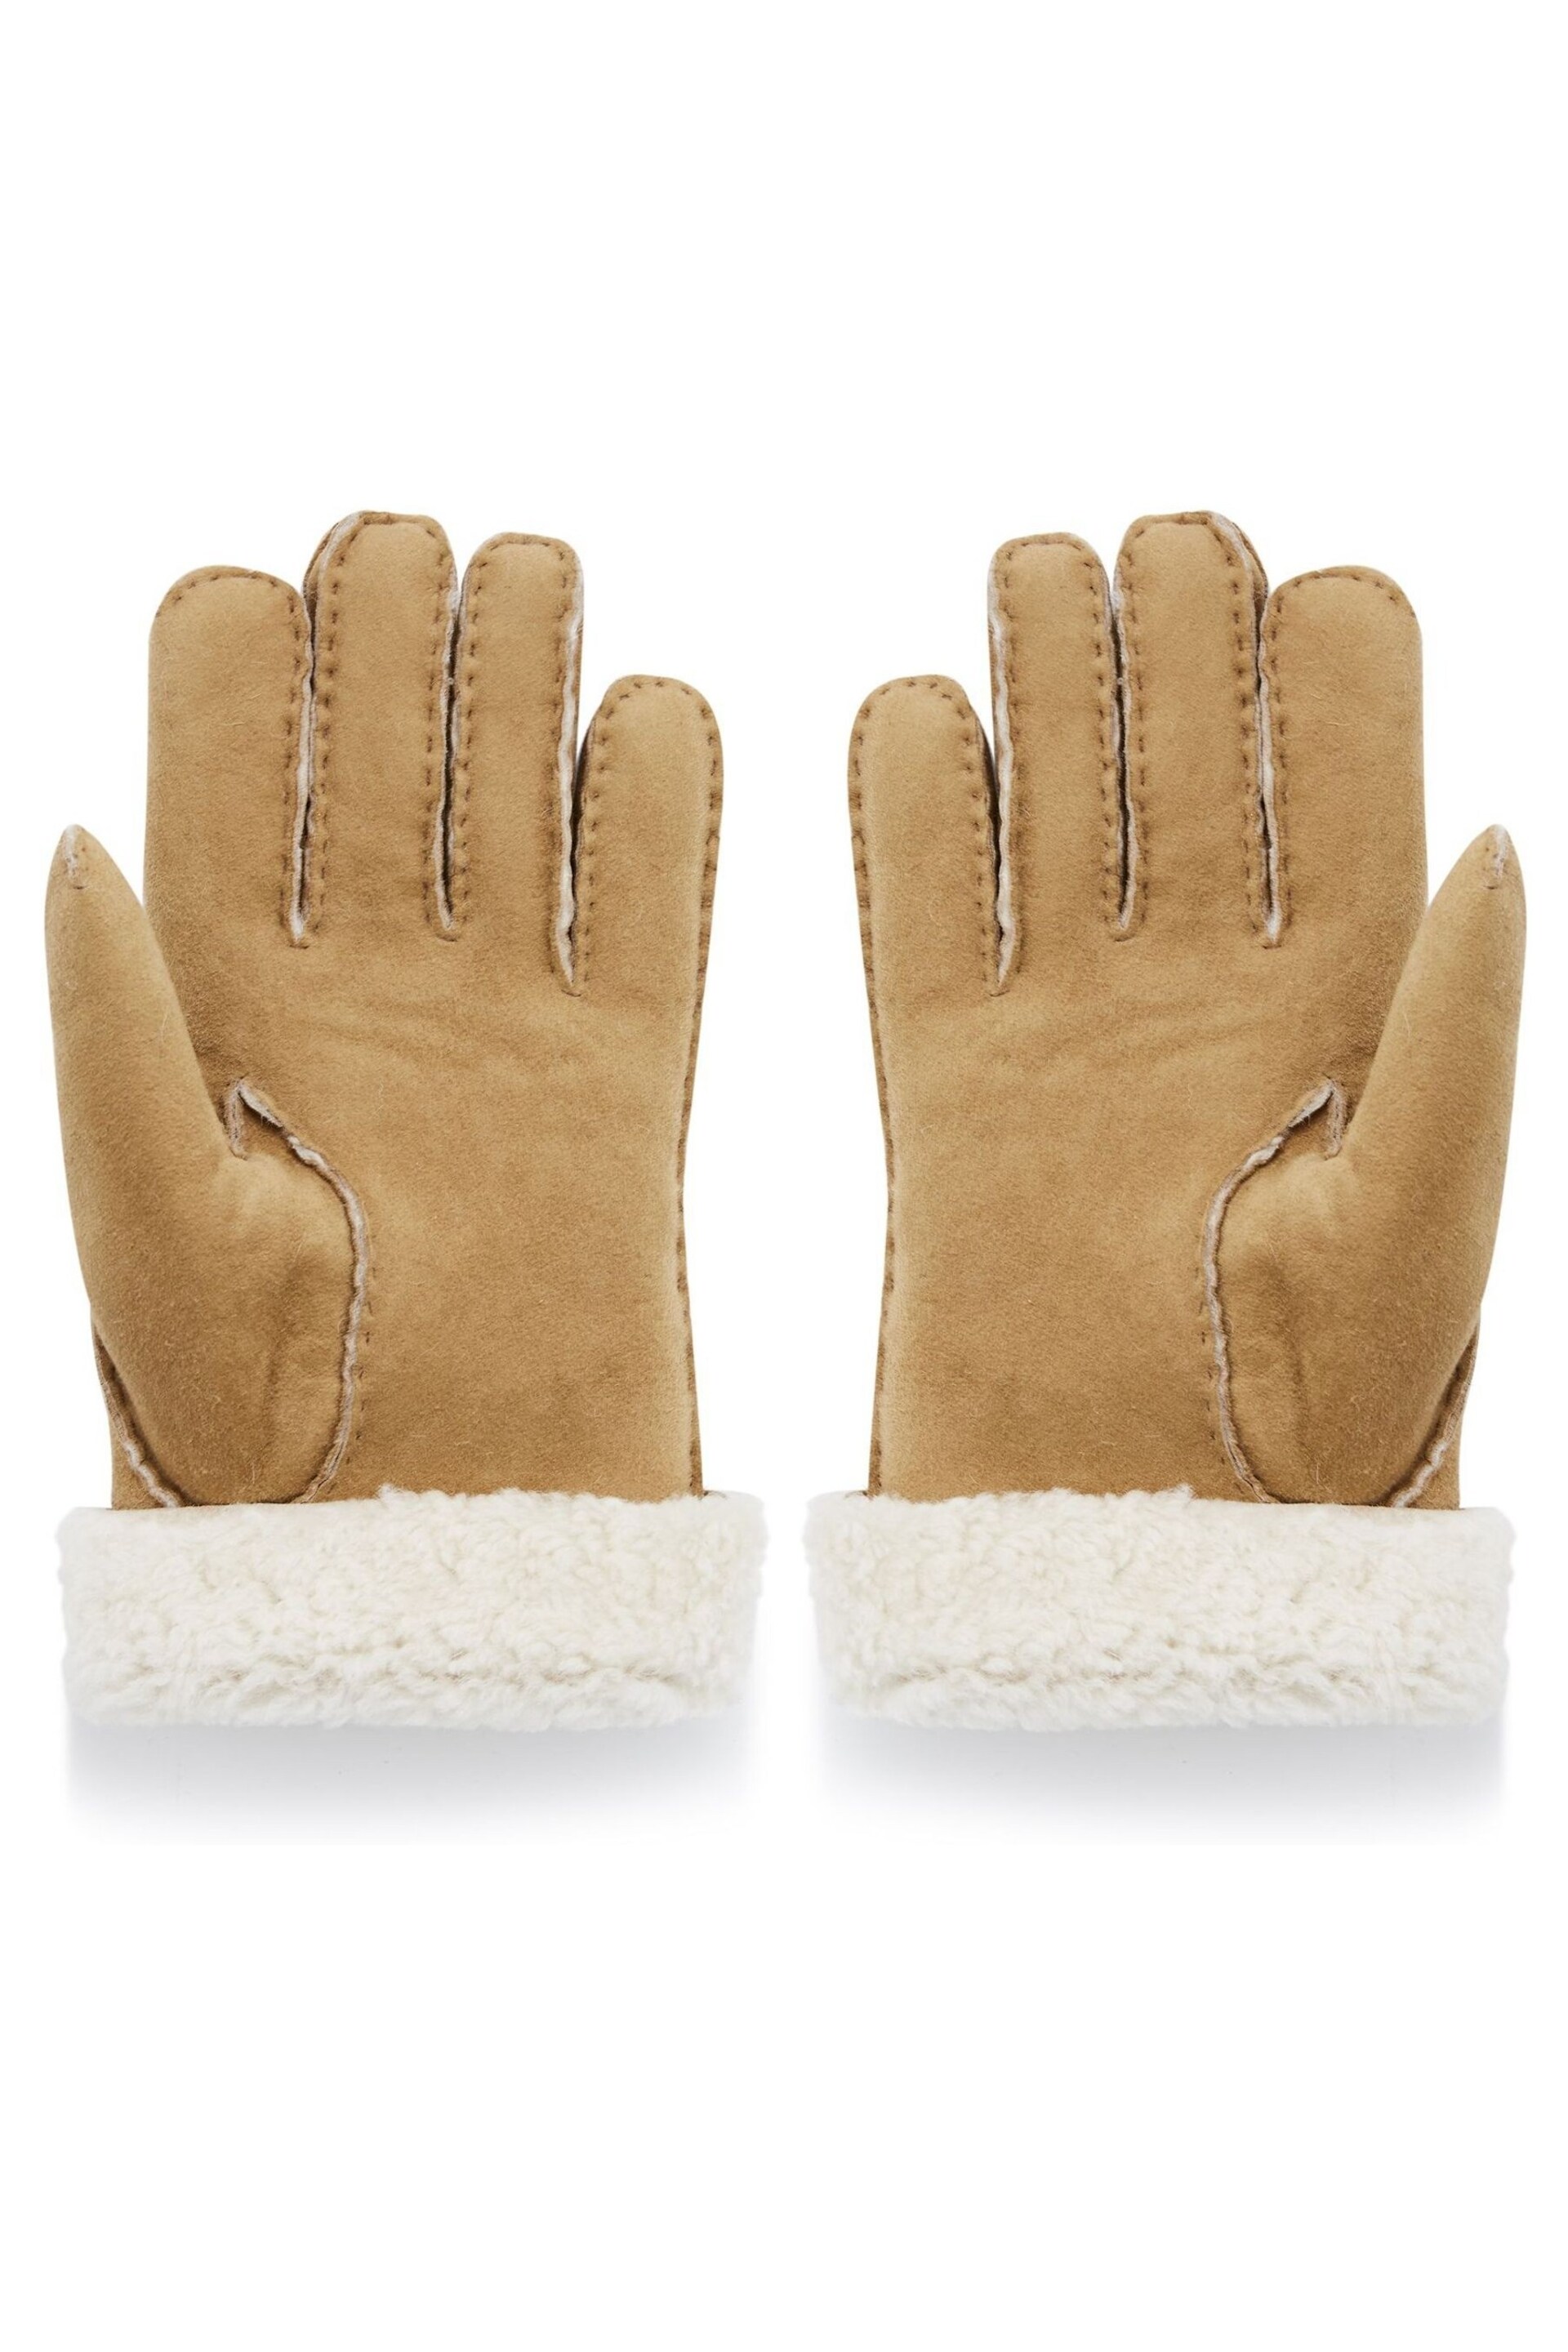 Celtic & Co. Natural Sheepskin Gloves - Image 4 of 4